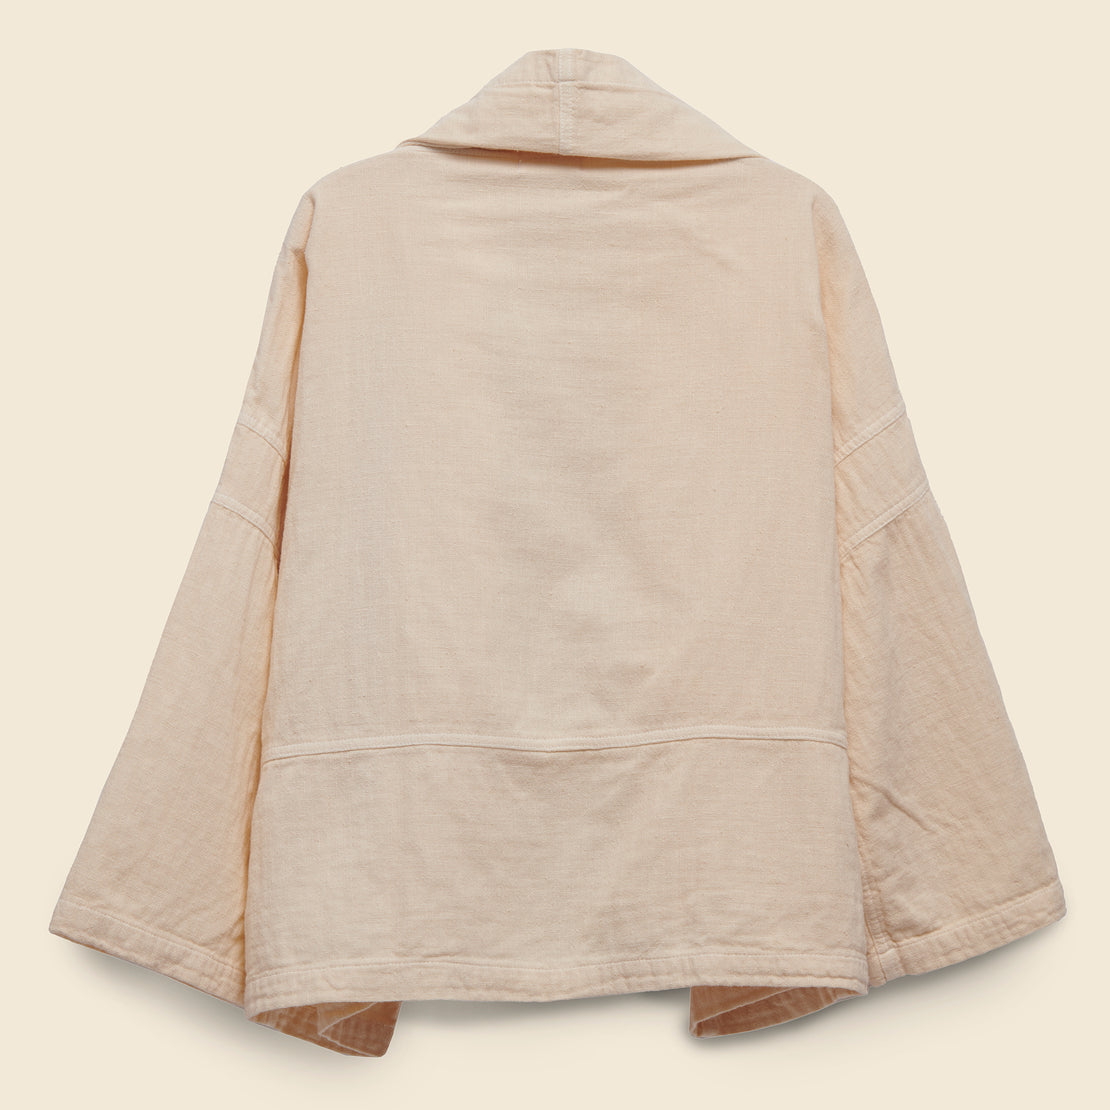 Kimono Jacket - Kinari - Atelier Delphine - STAG Provisions - W - Tops - Kimono